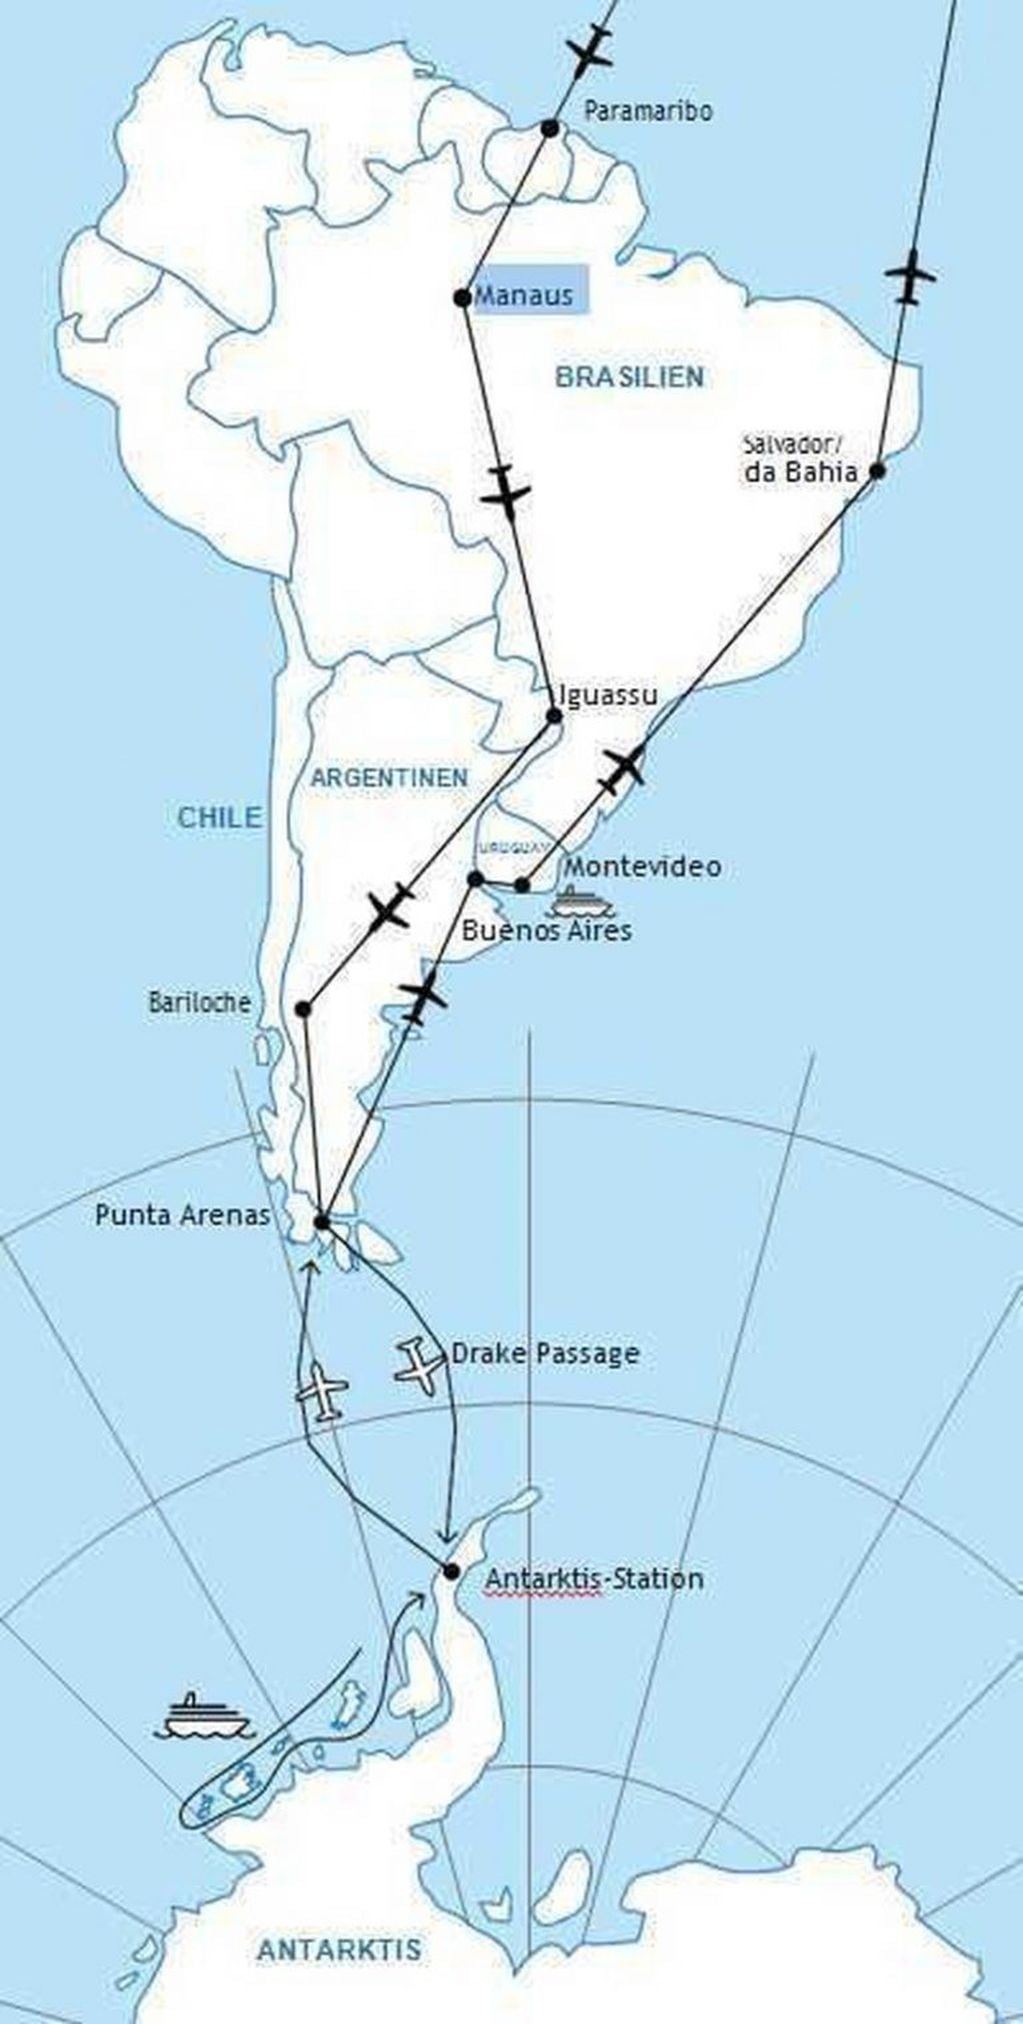 Tour de lujo de Alemania a la Antártida, que pasará por Cataratas. (Portal da Cidade)